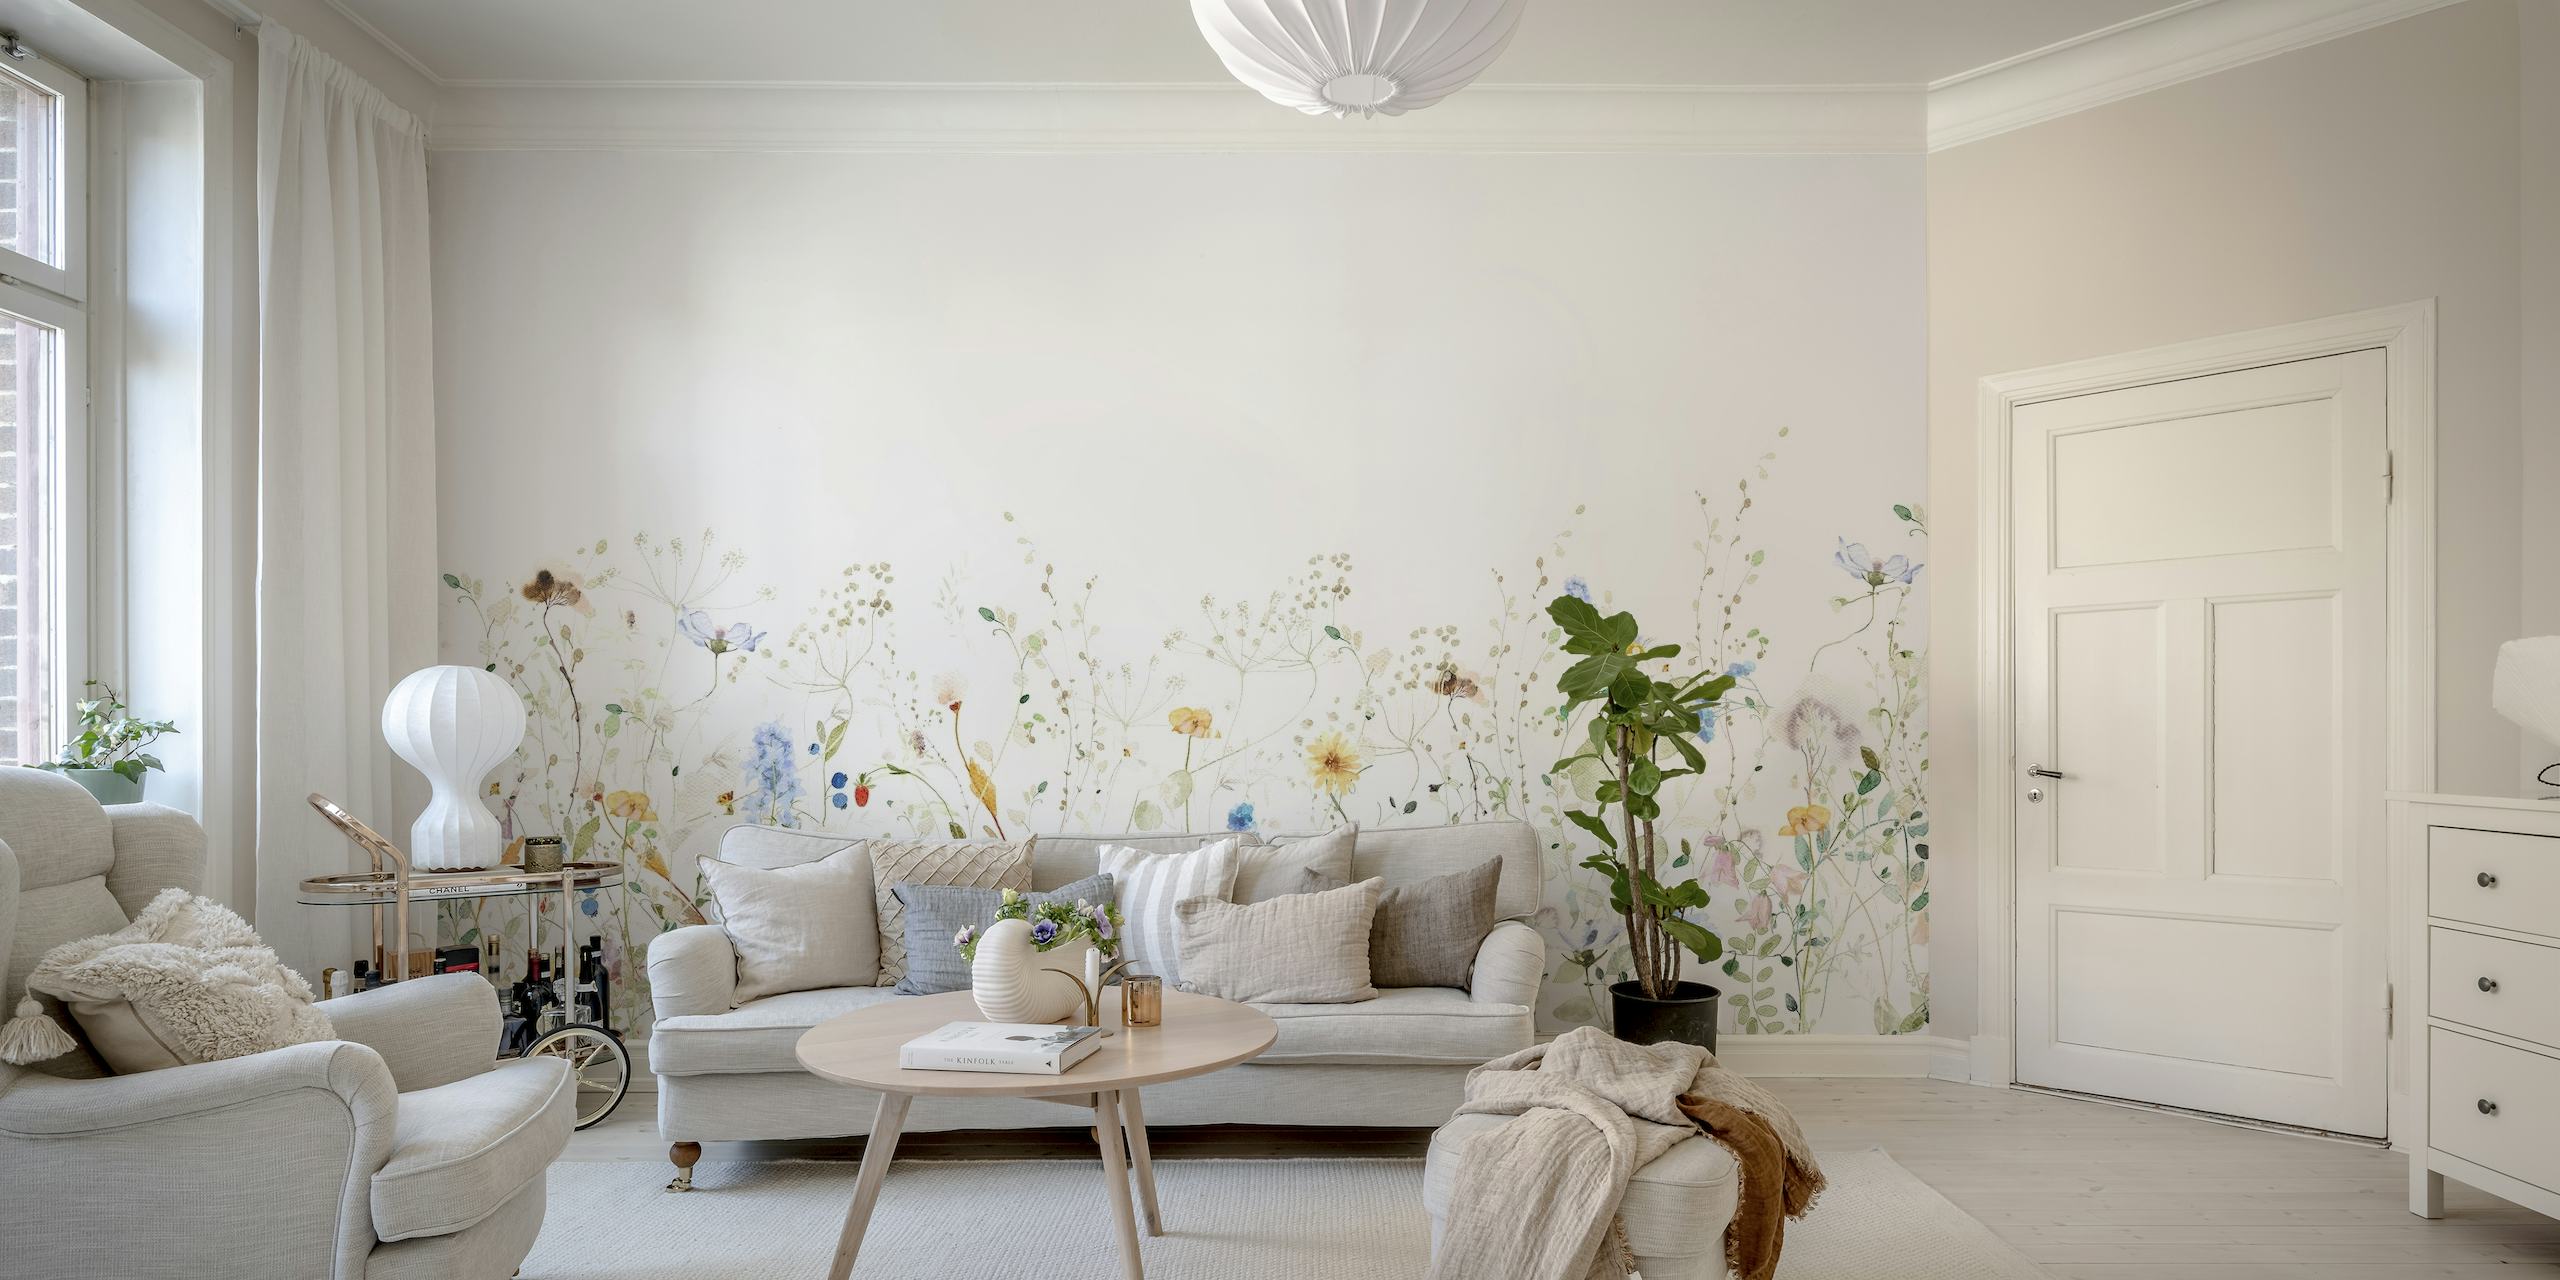 Bunte Wildblumen sind zart auf einem hellen Hintergrund verteilt und ergeben ein üppiges, wiesenartiges Wandgemälde